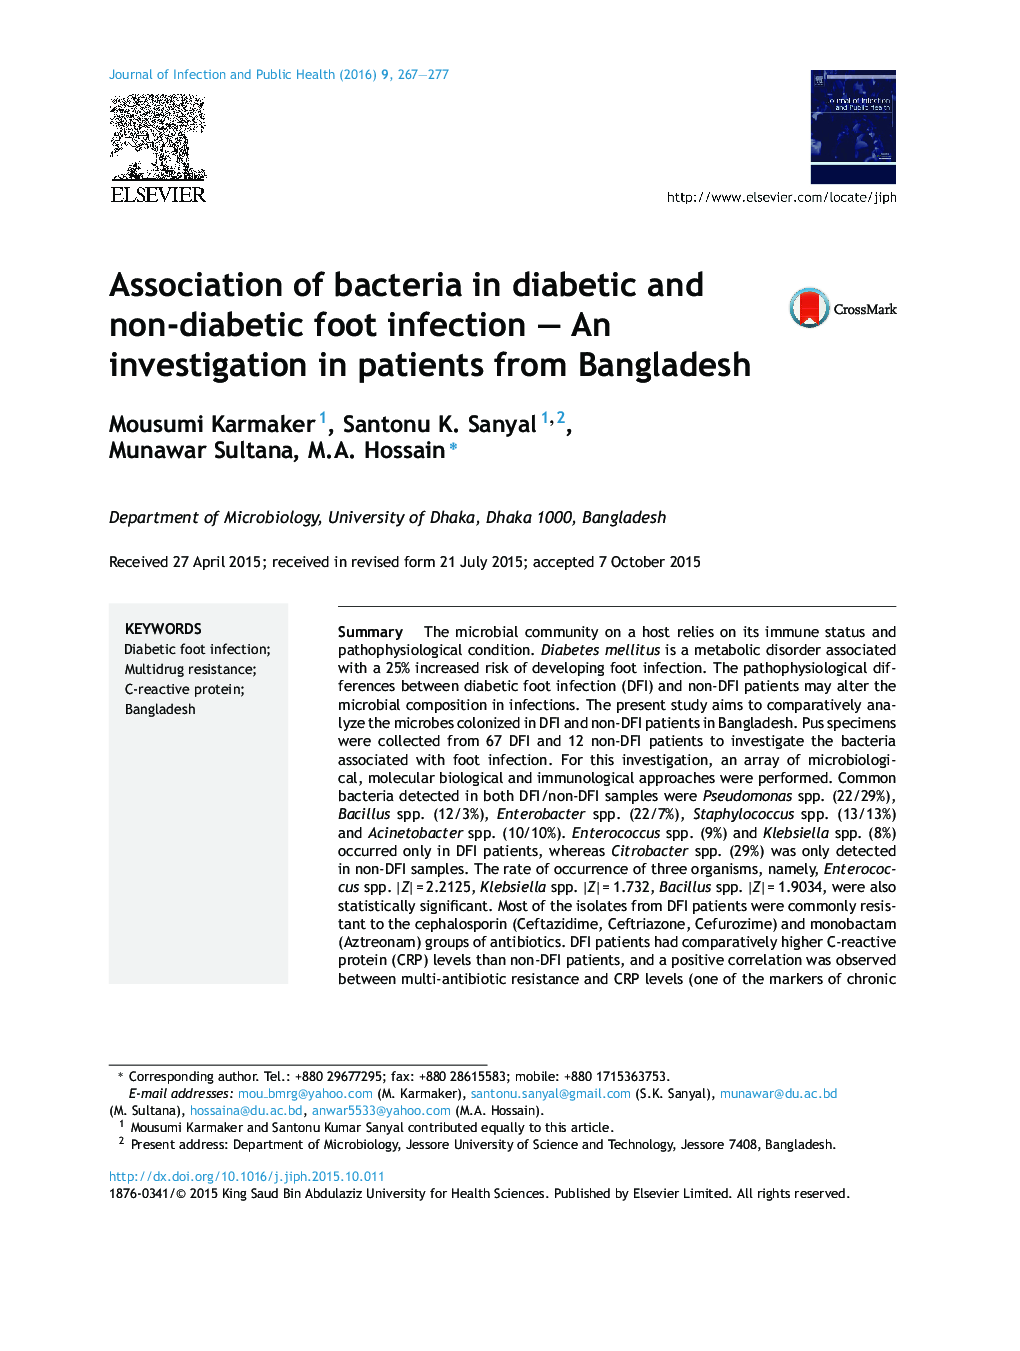 ارتباط باکتری ها در عفونت پای دیابتی و غیردیابتی؛ بررسی در بیماران از بنگلادش